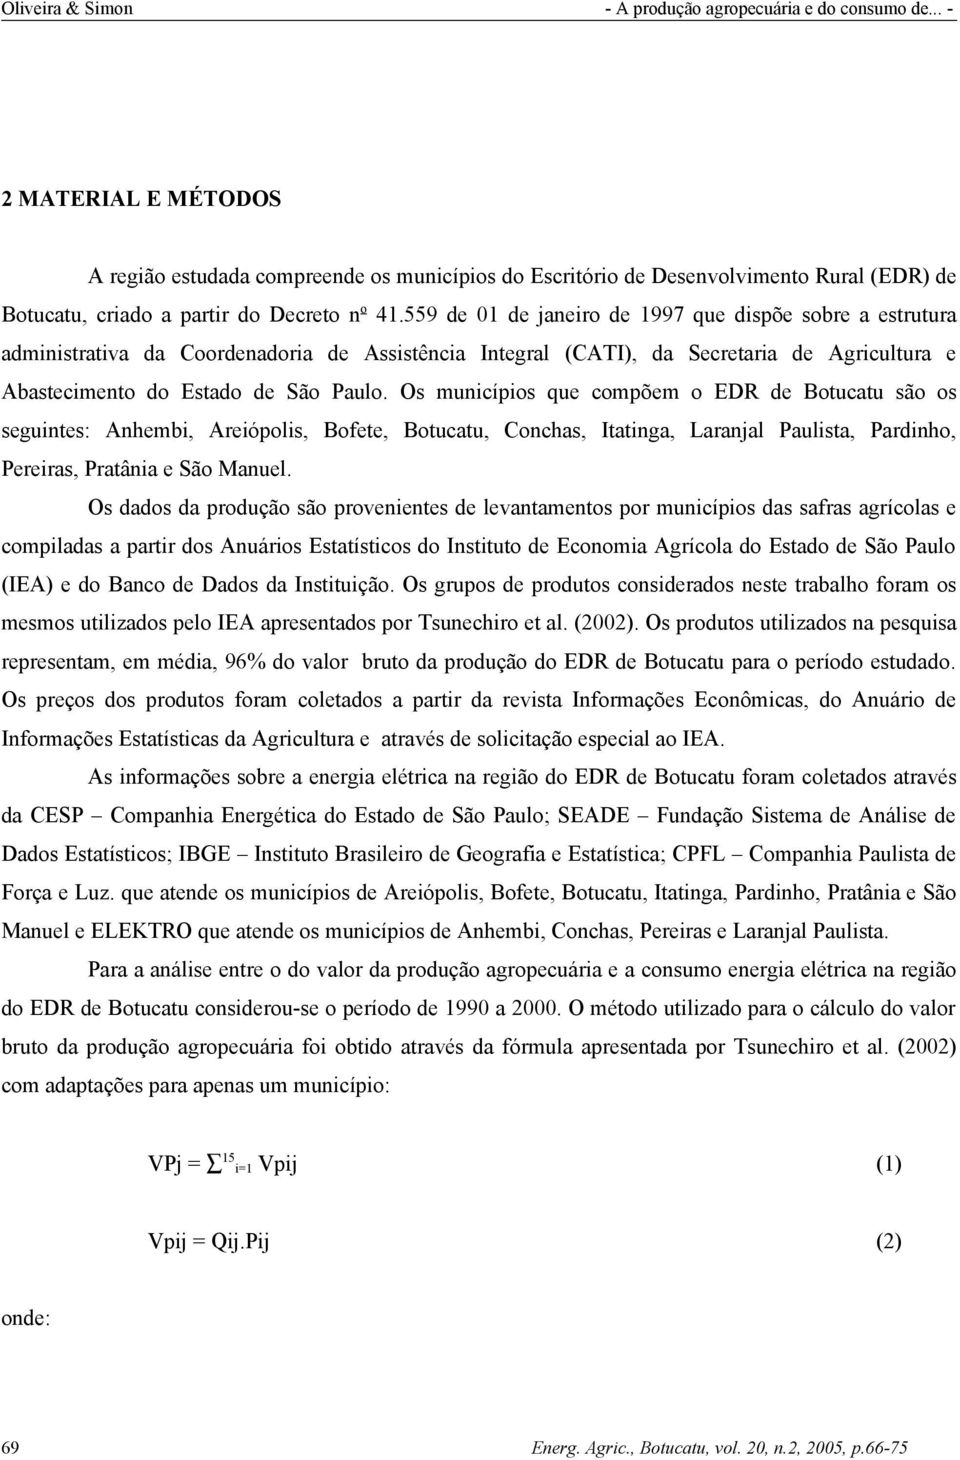 Os municípios que compõem o EDR de Botucatu são os seguintes: Anhembi, Areiópolis, Bofete, Botucatu, Conchas, Itatinga, Laranjal Paulista, Pardinho, Pereiras, Pratânia e São Manuel.